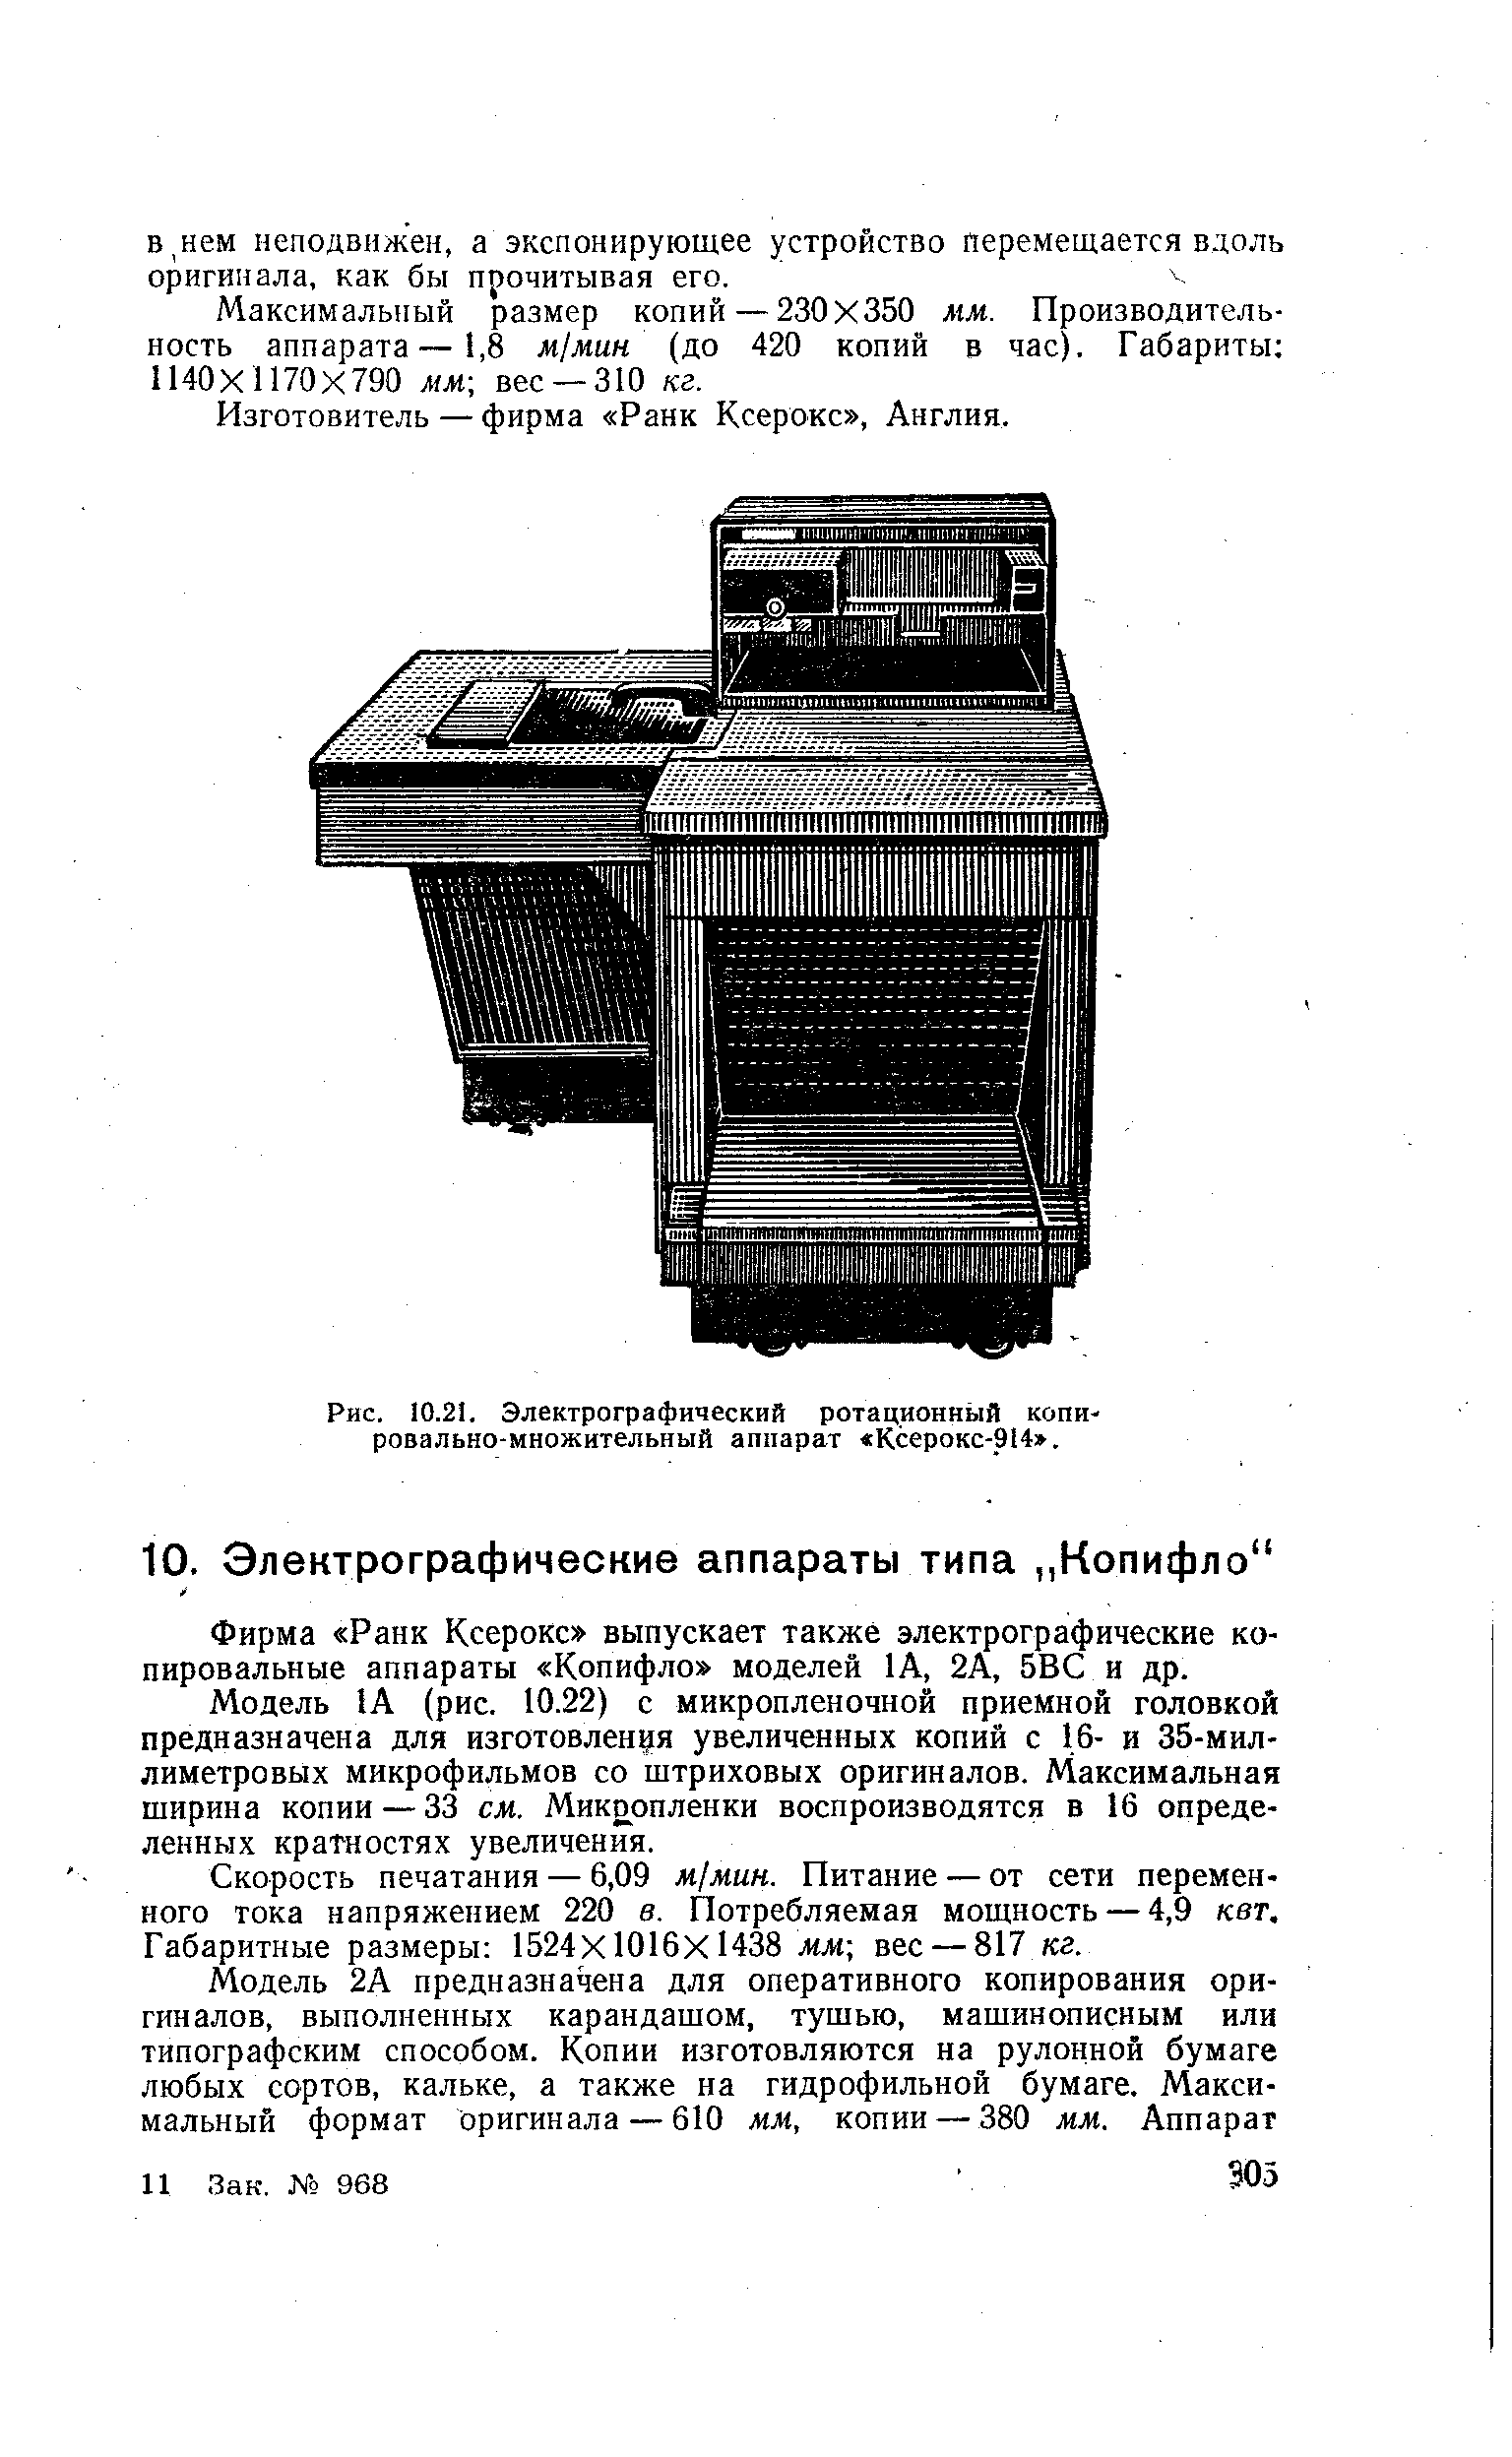 Рис. 10.21. Электрографический ротационный копировально-множительный аппарат Ксерокс-914 .
